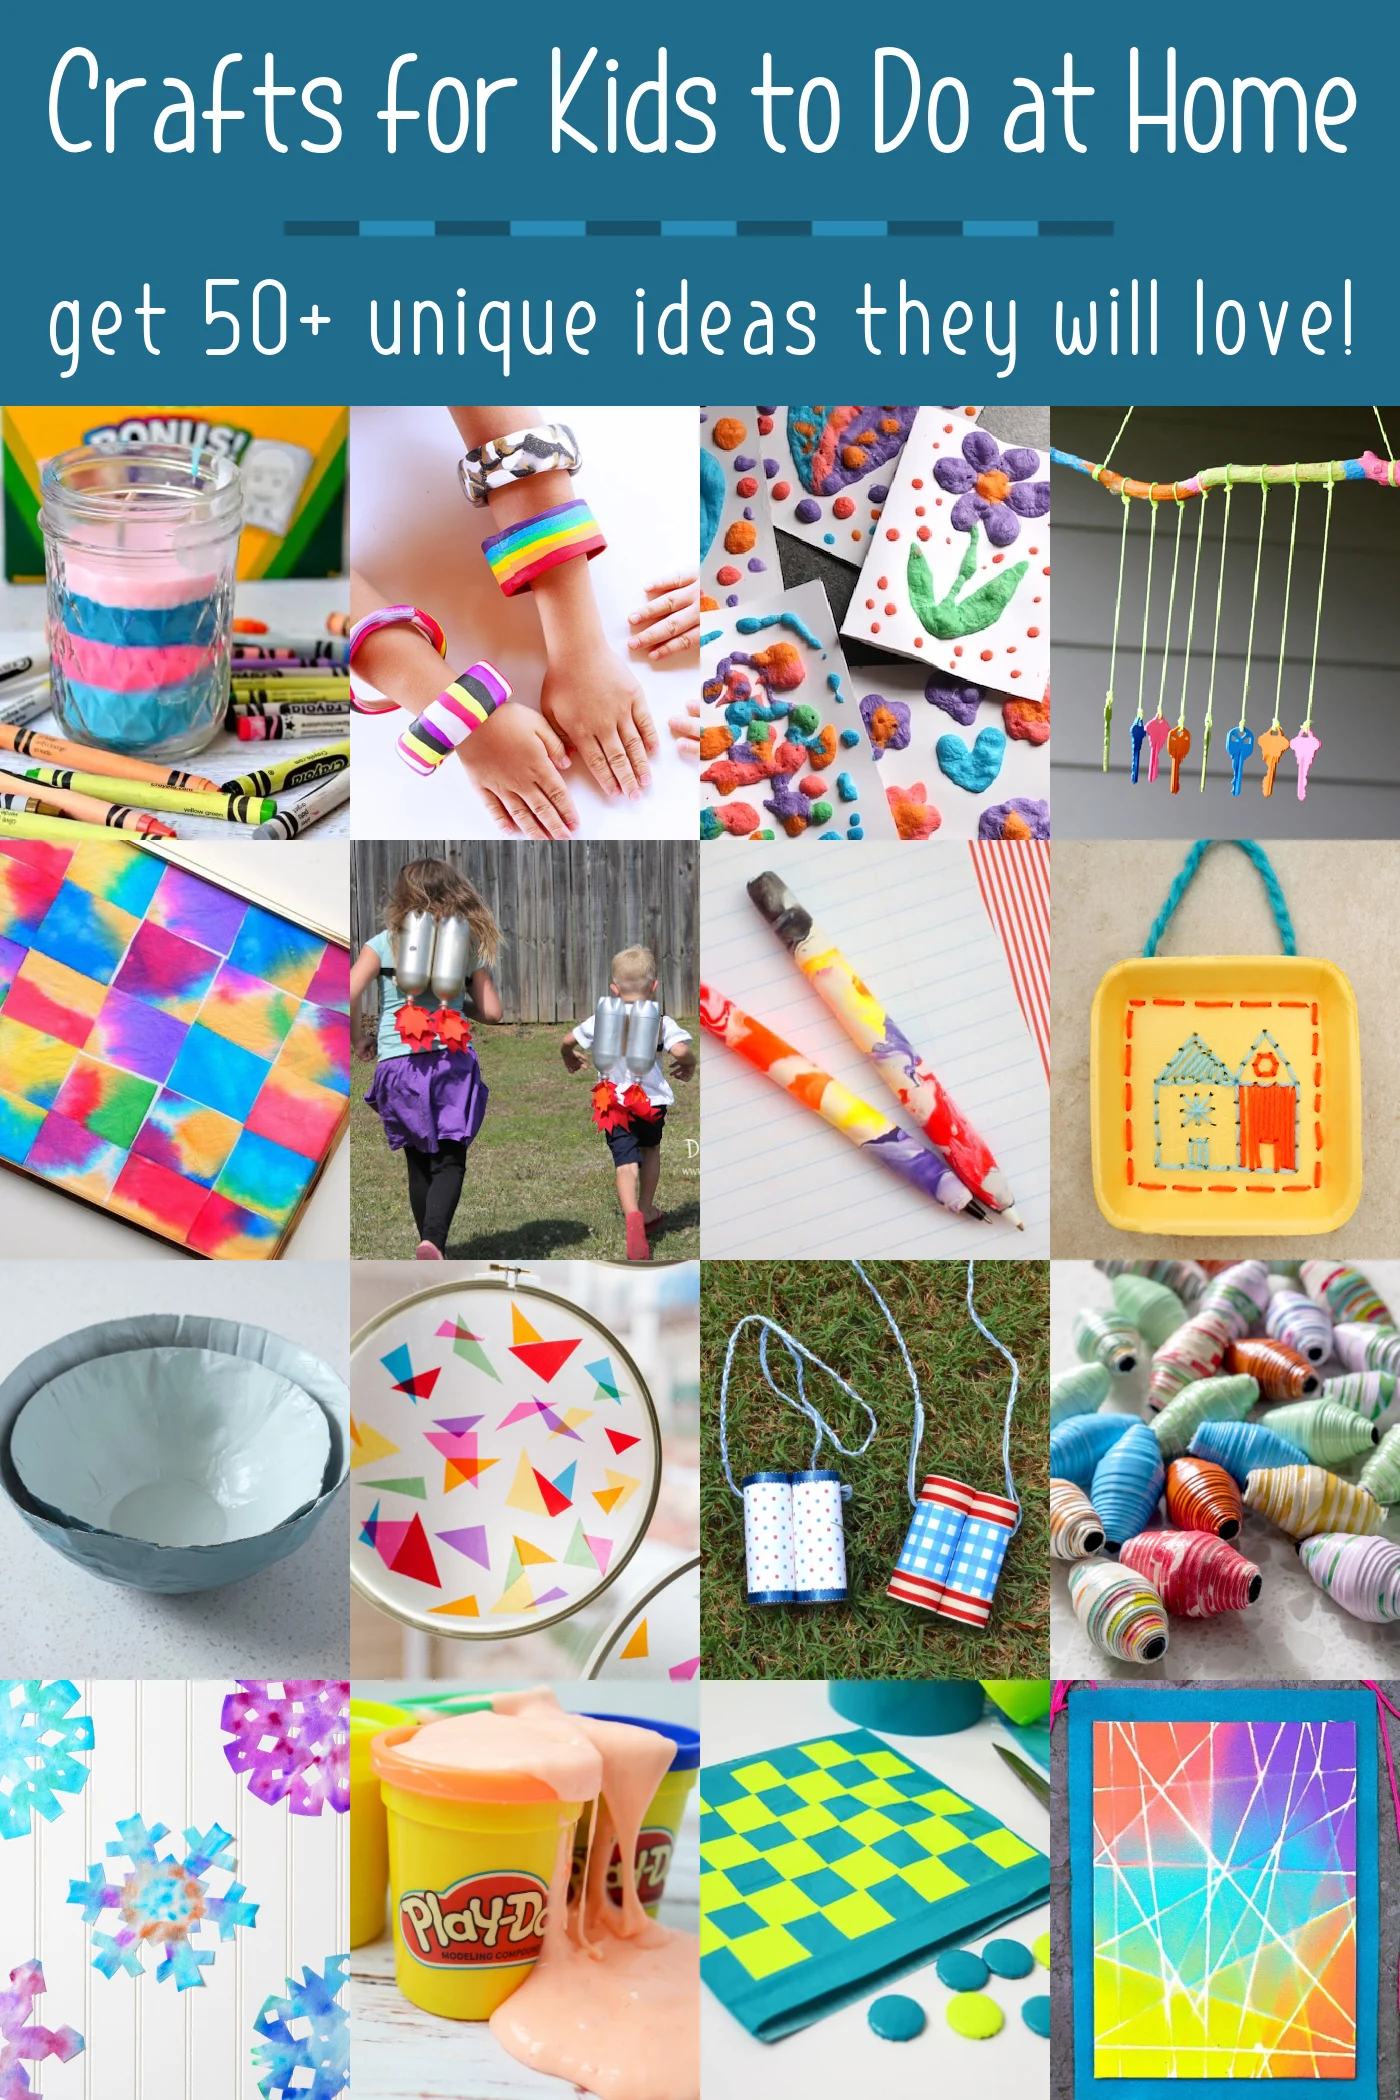 30+ Paper Bag Crafts for Kids - DIY Candy